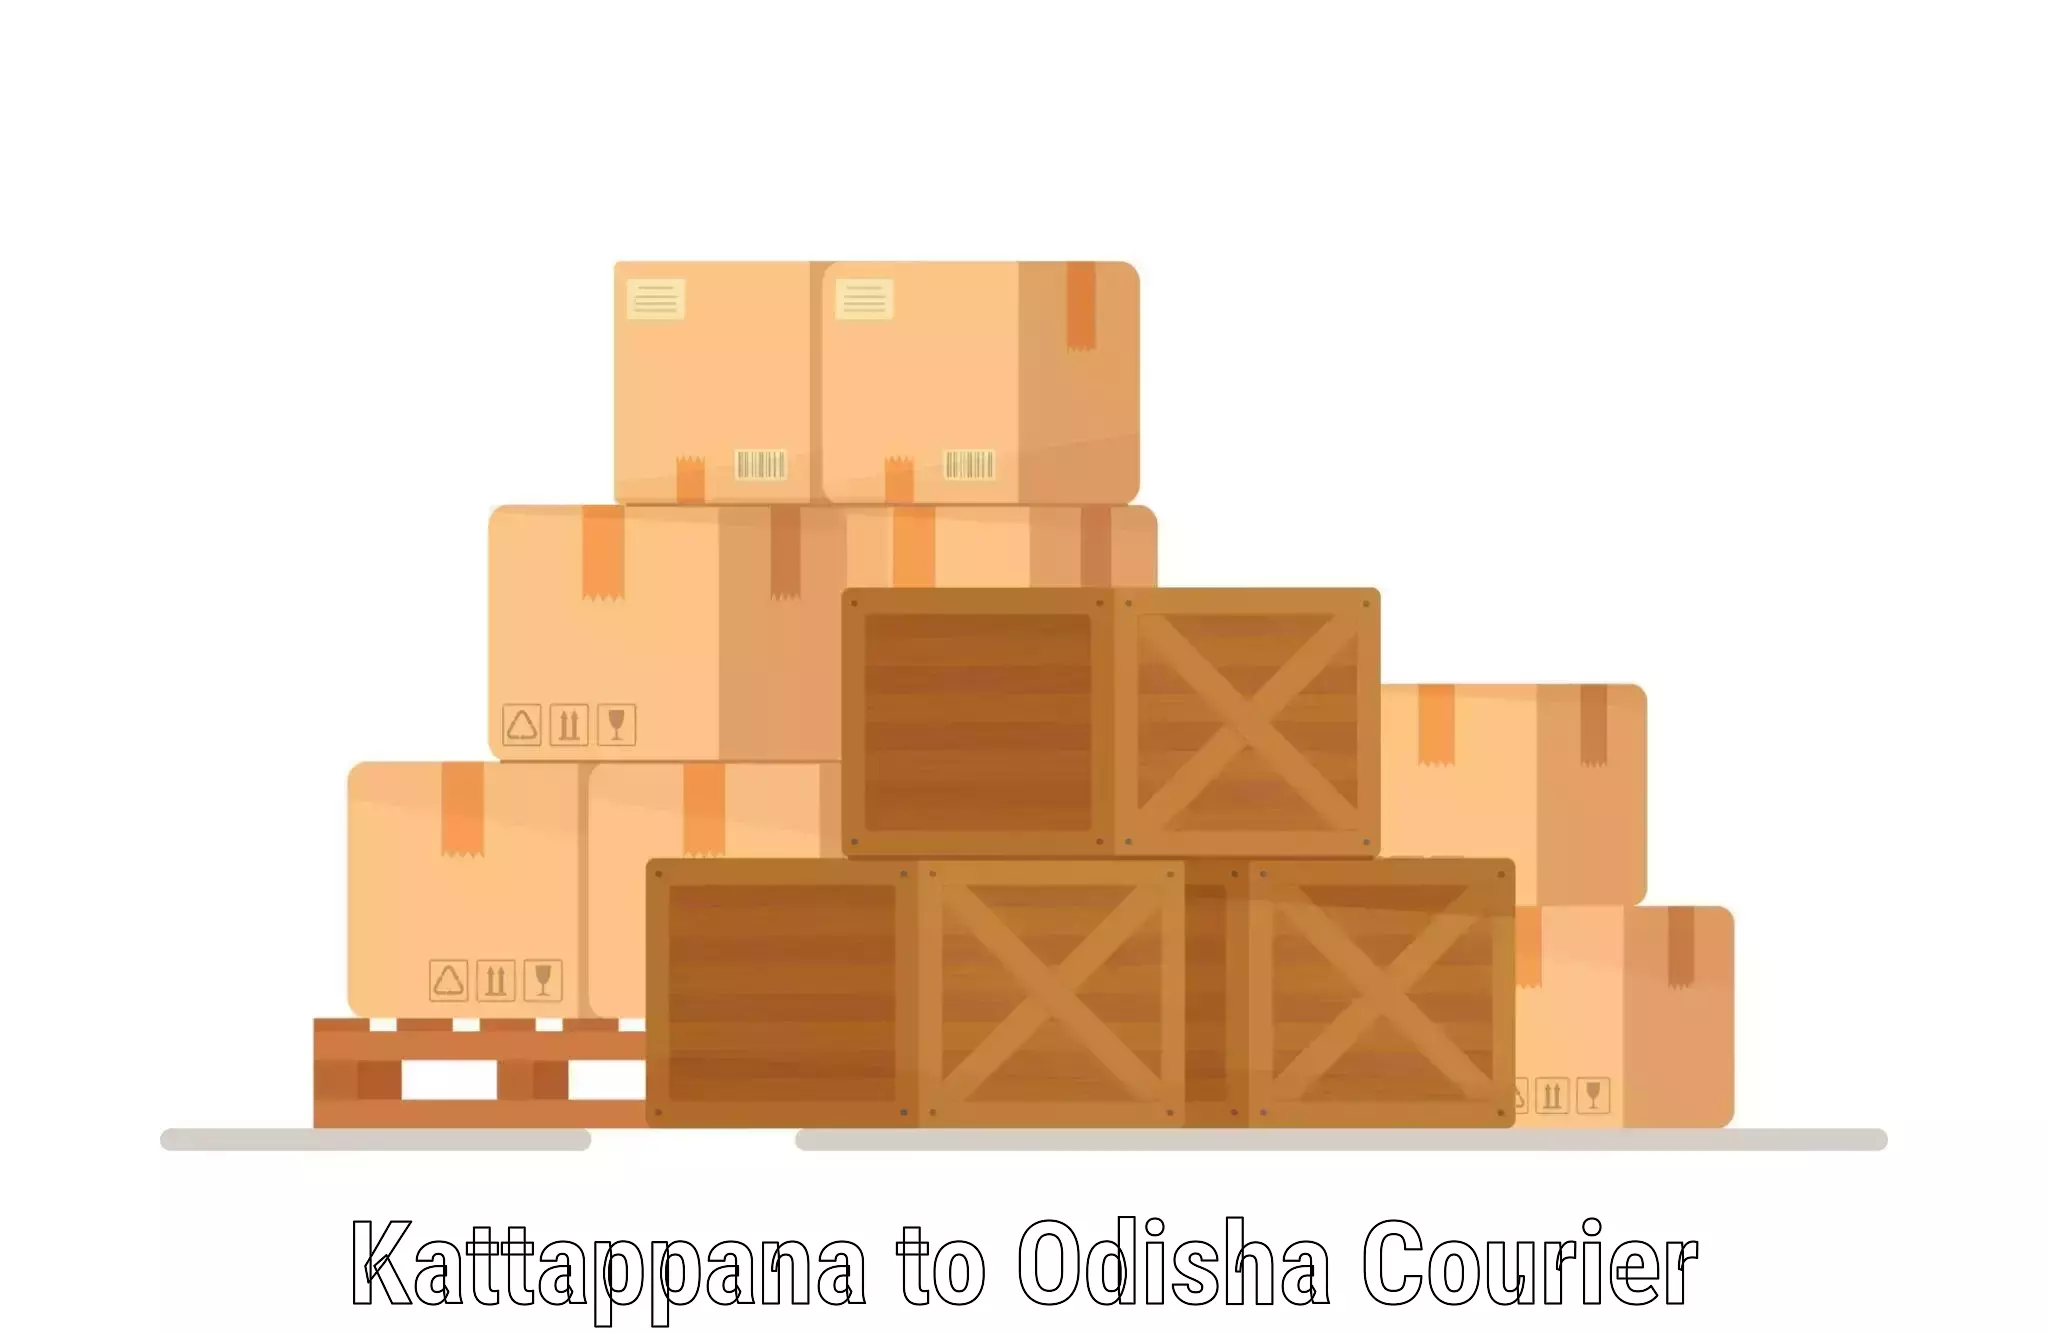 High-capacity parcel service Kattappana to Odisha